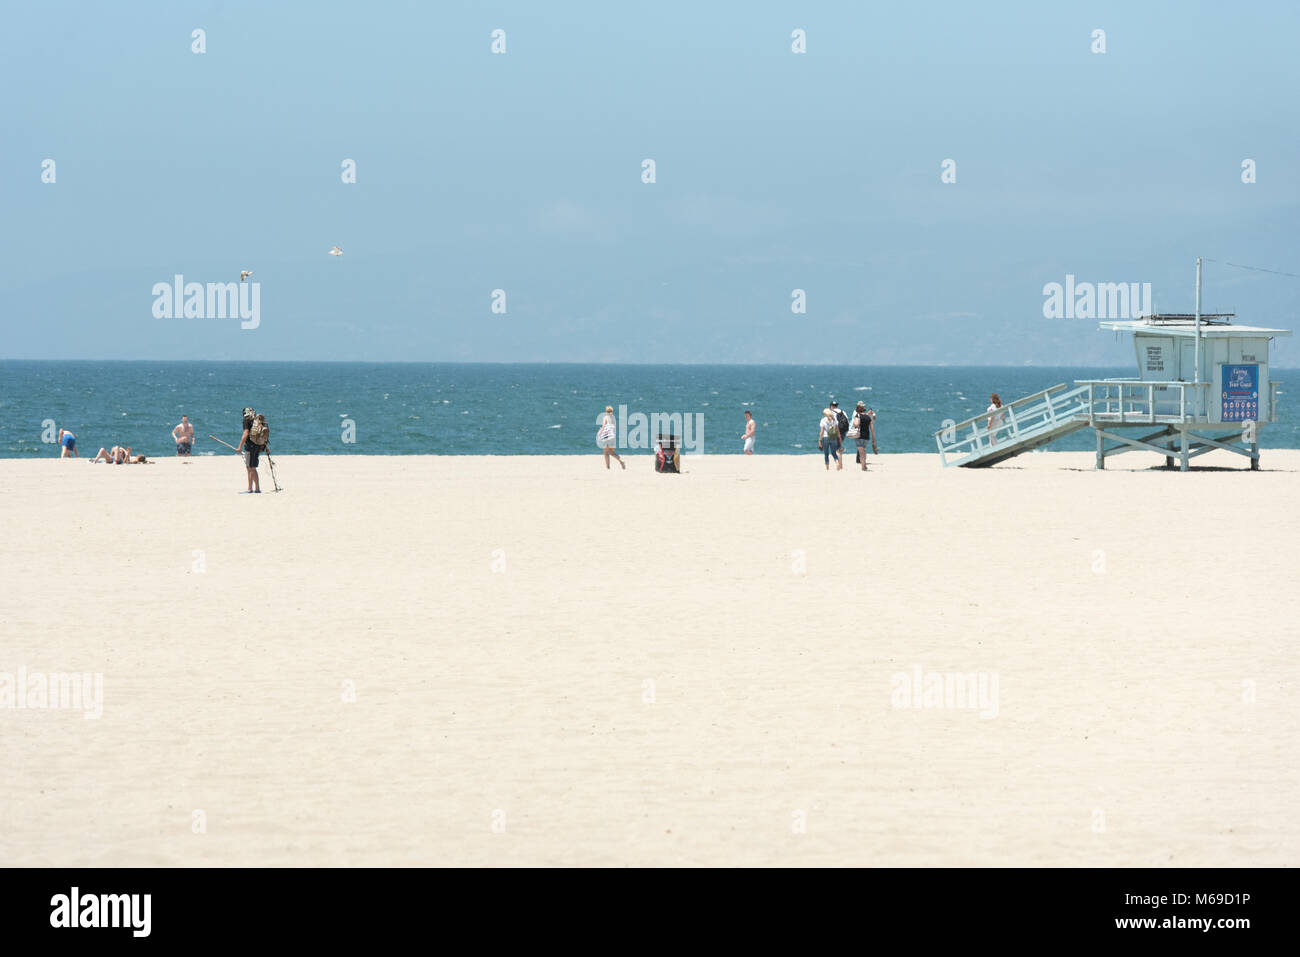 Famosa in tutto il mondo la spiaggia di Venezia una delle più famose spiagge della California. Foto Stock